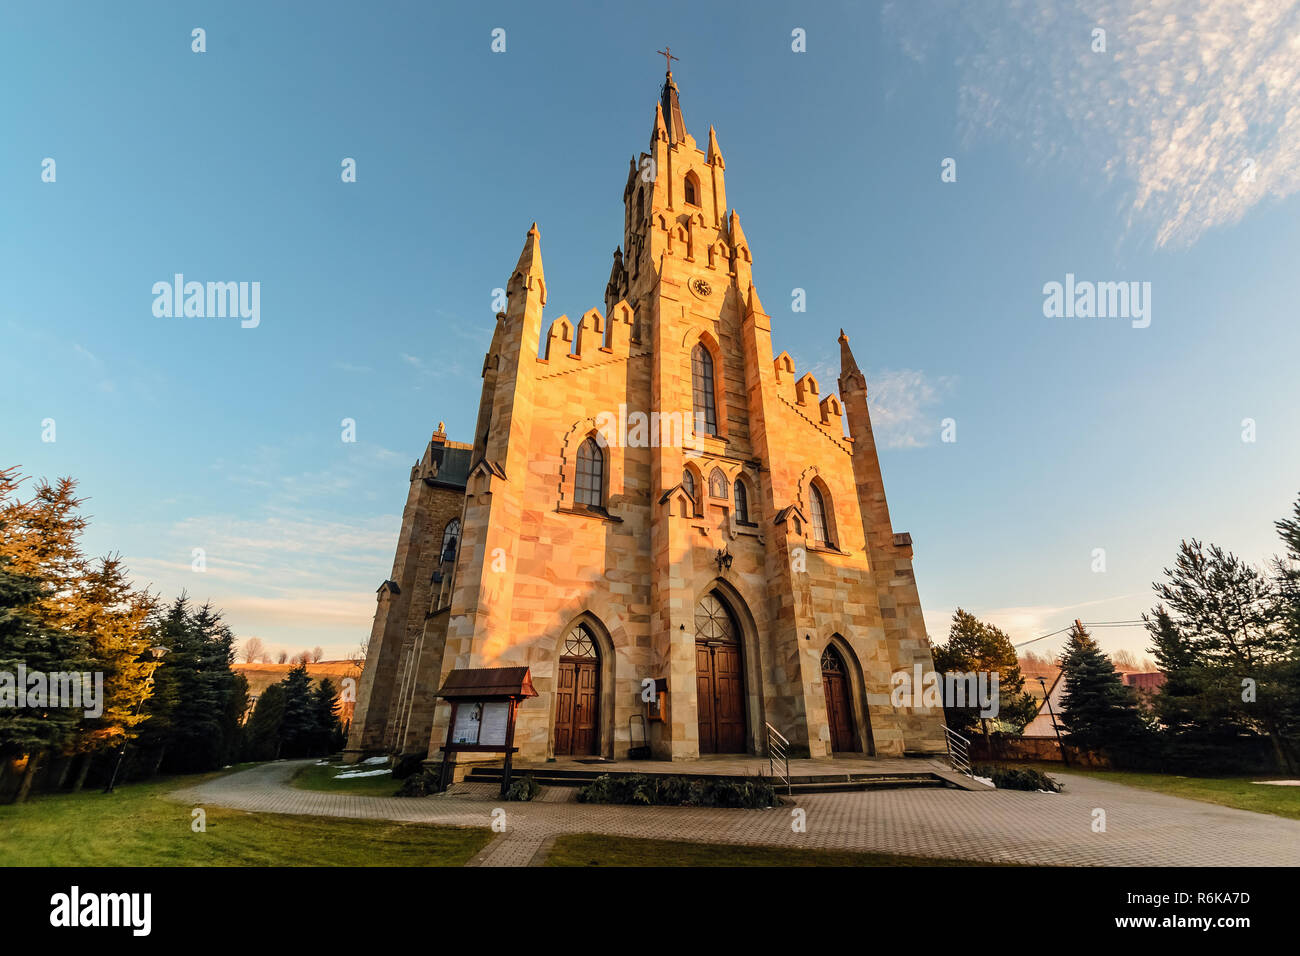 Gotische Hl. Jacek steinerne Kirche in Chocholow, Polen Ansicht von unten. Stockfoto